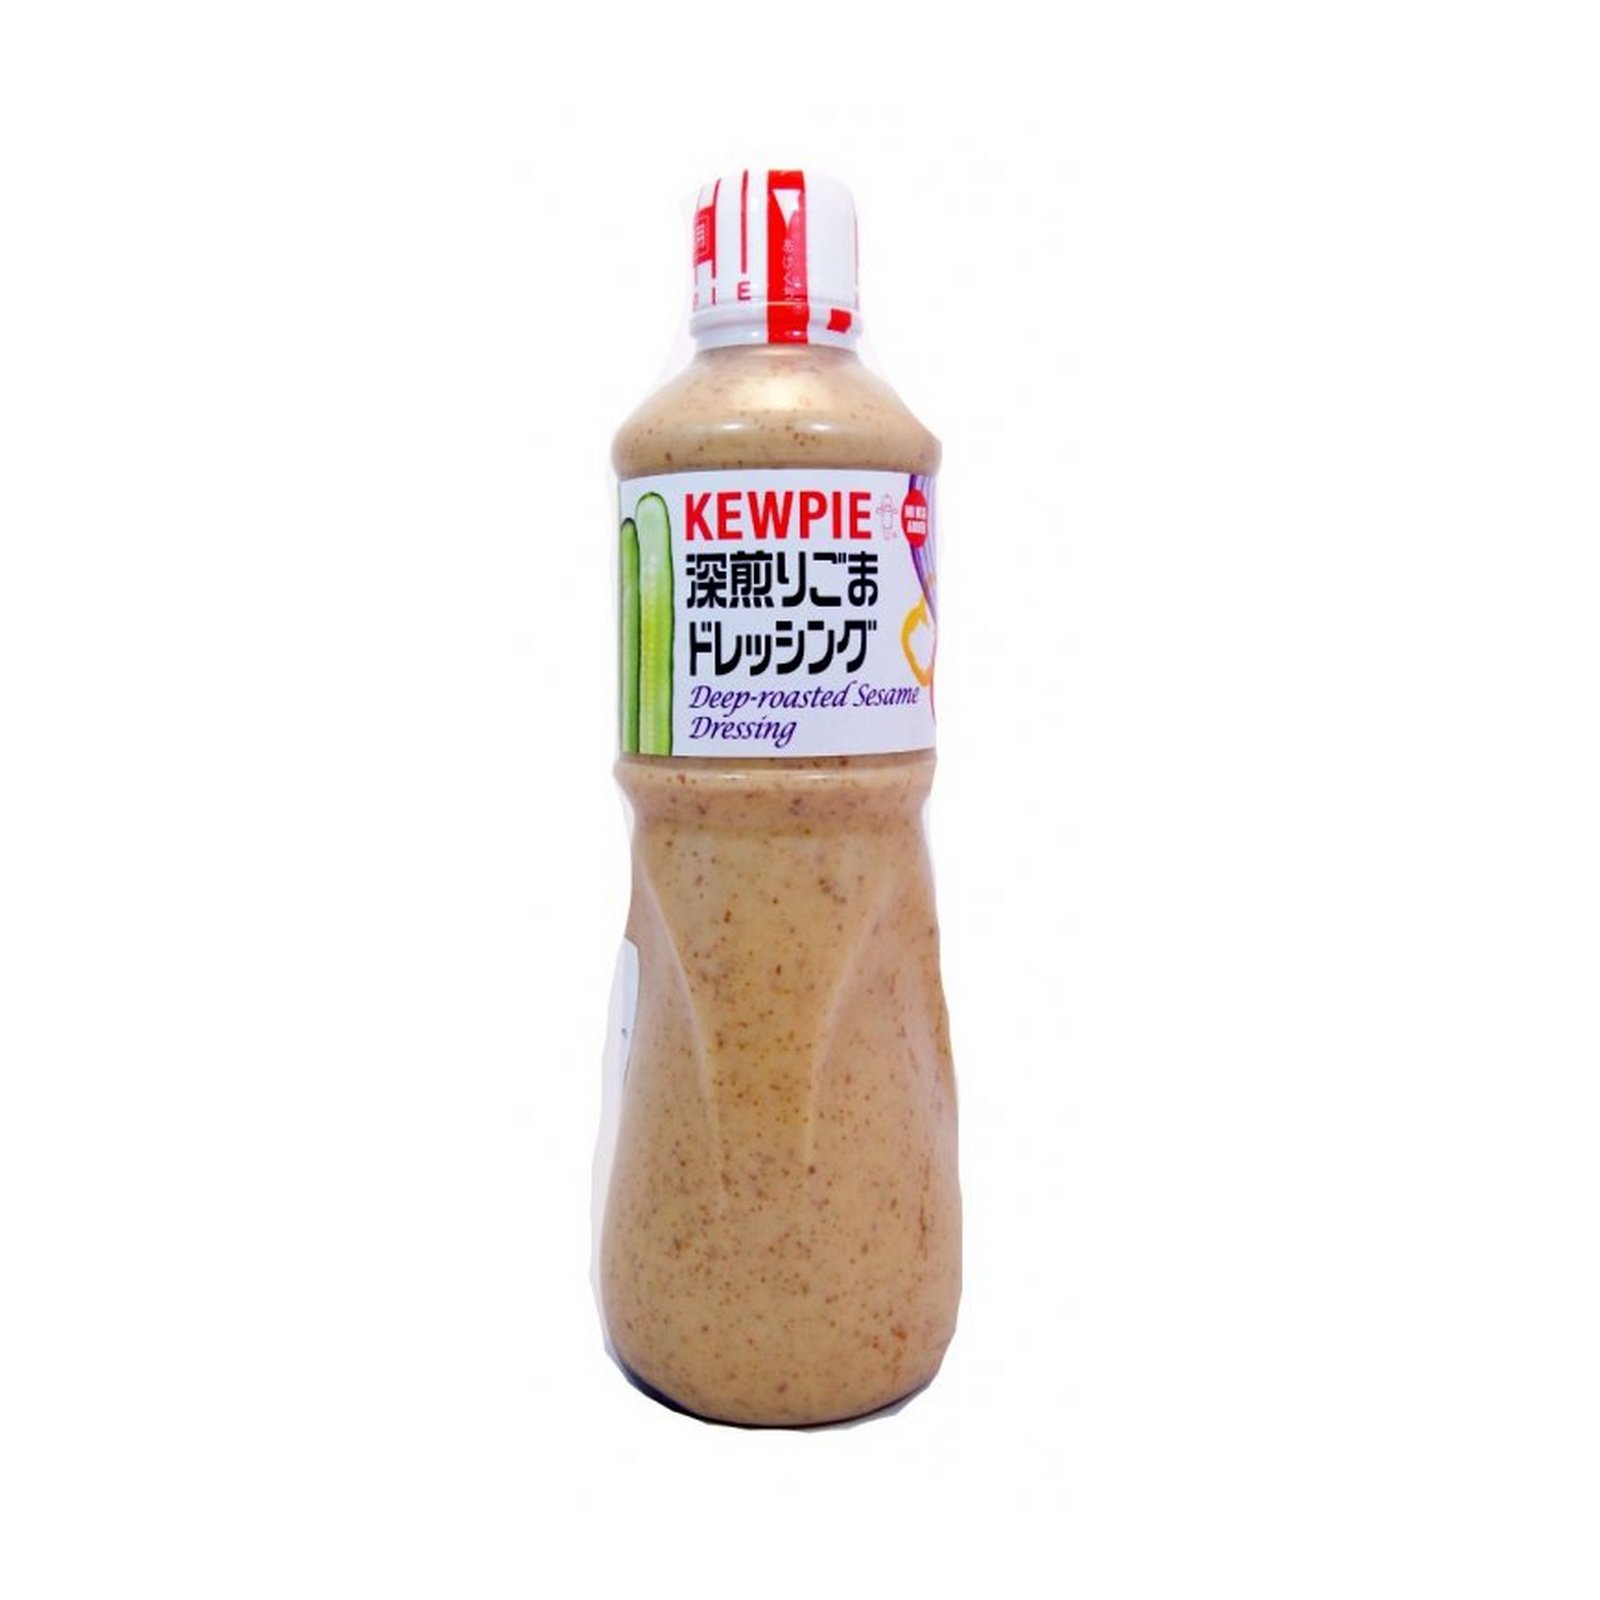 Kewpie sezamový dresink 1L